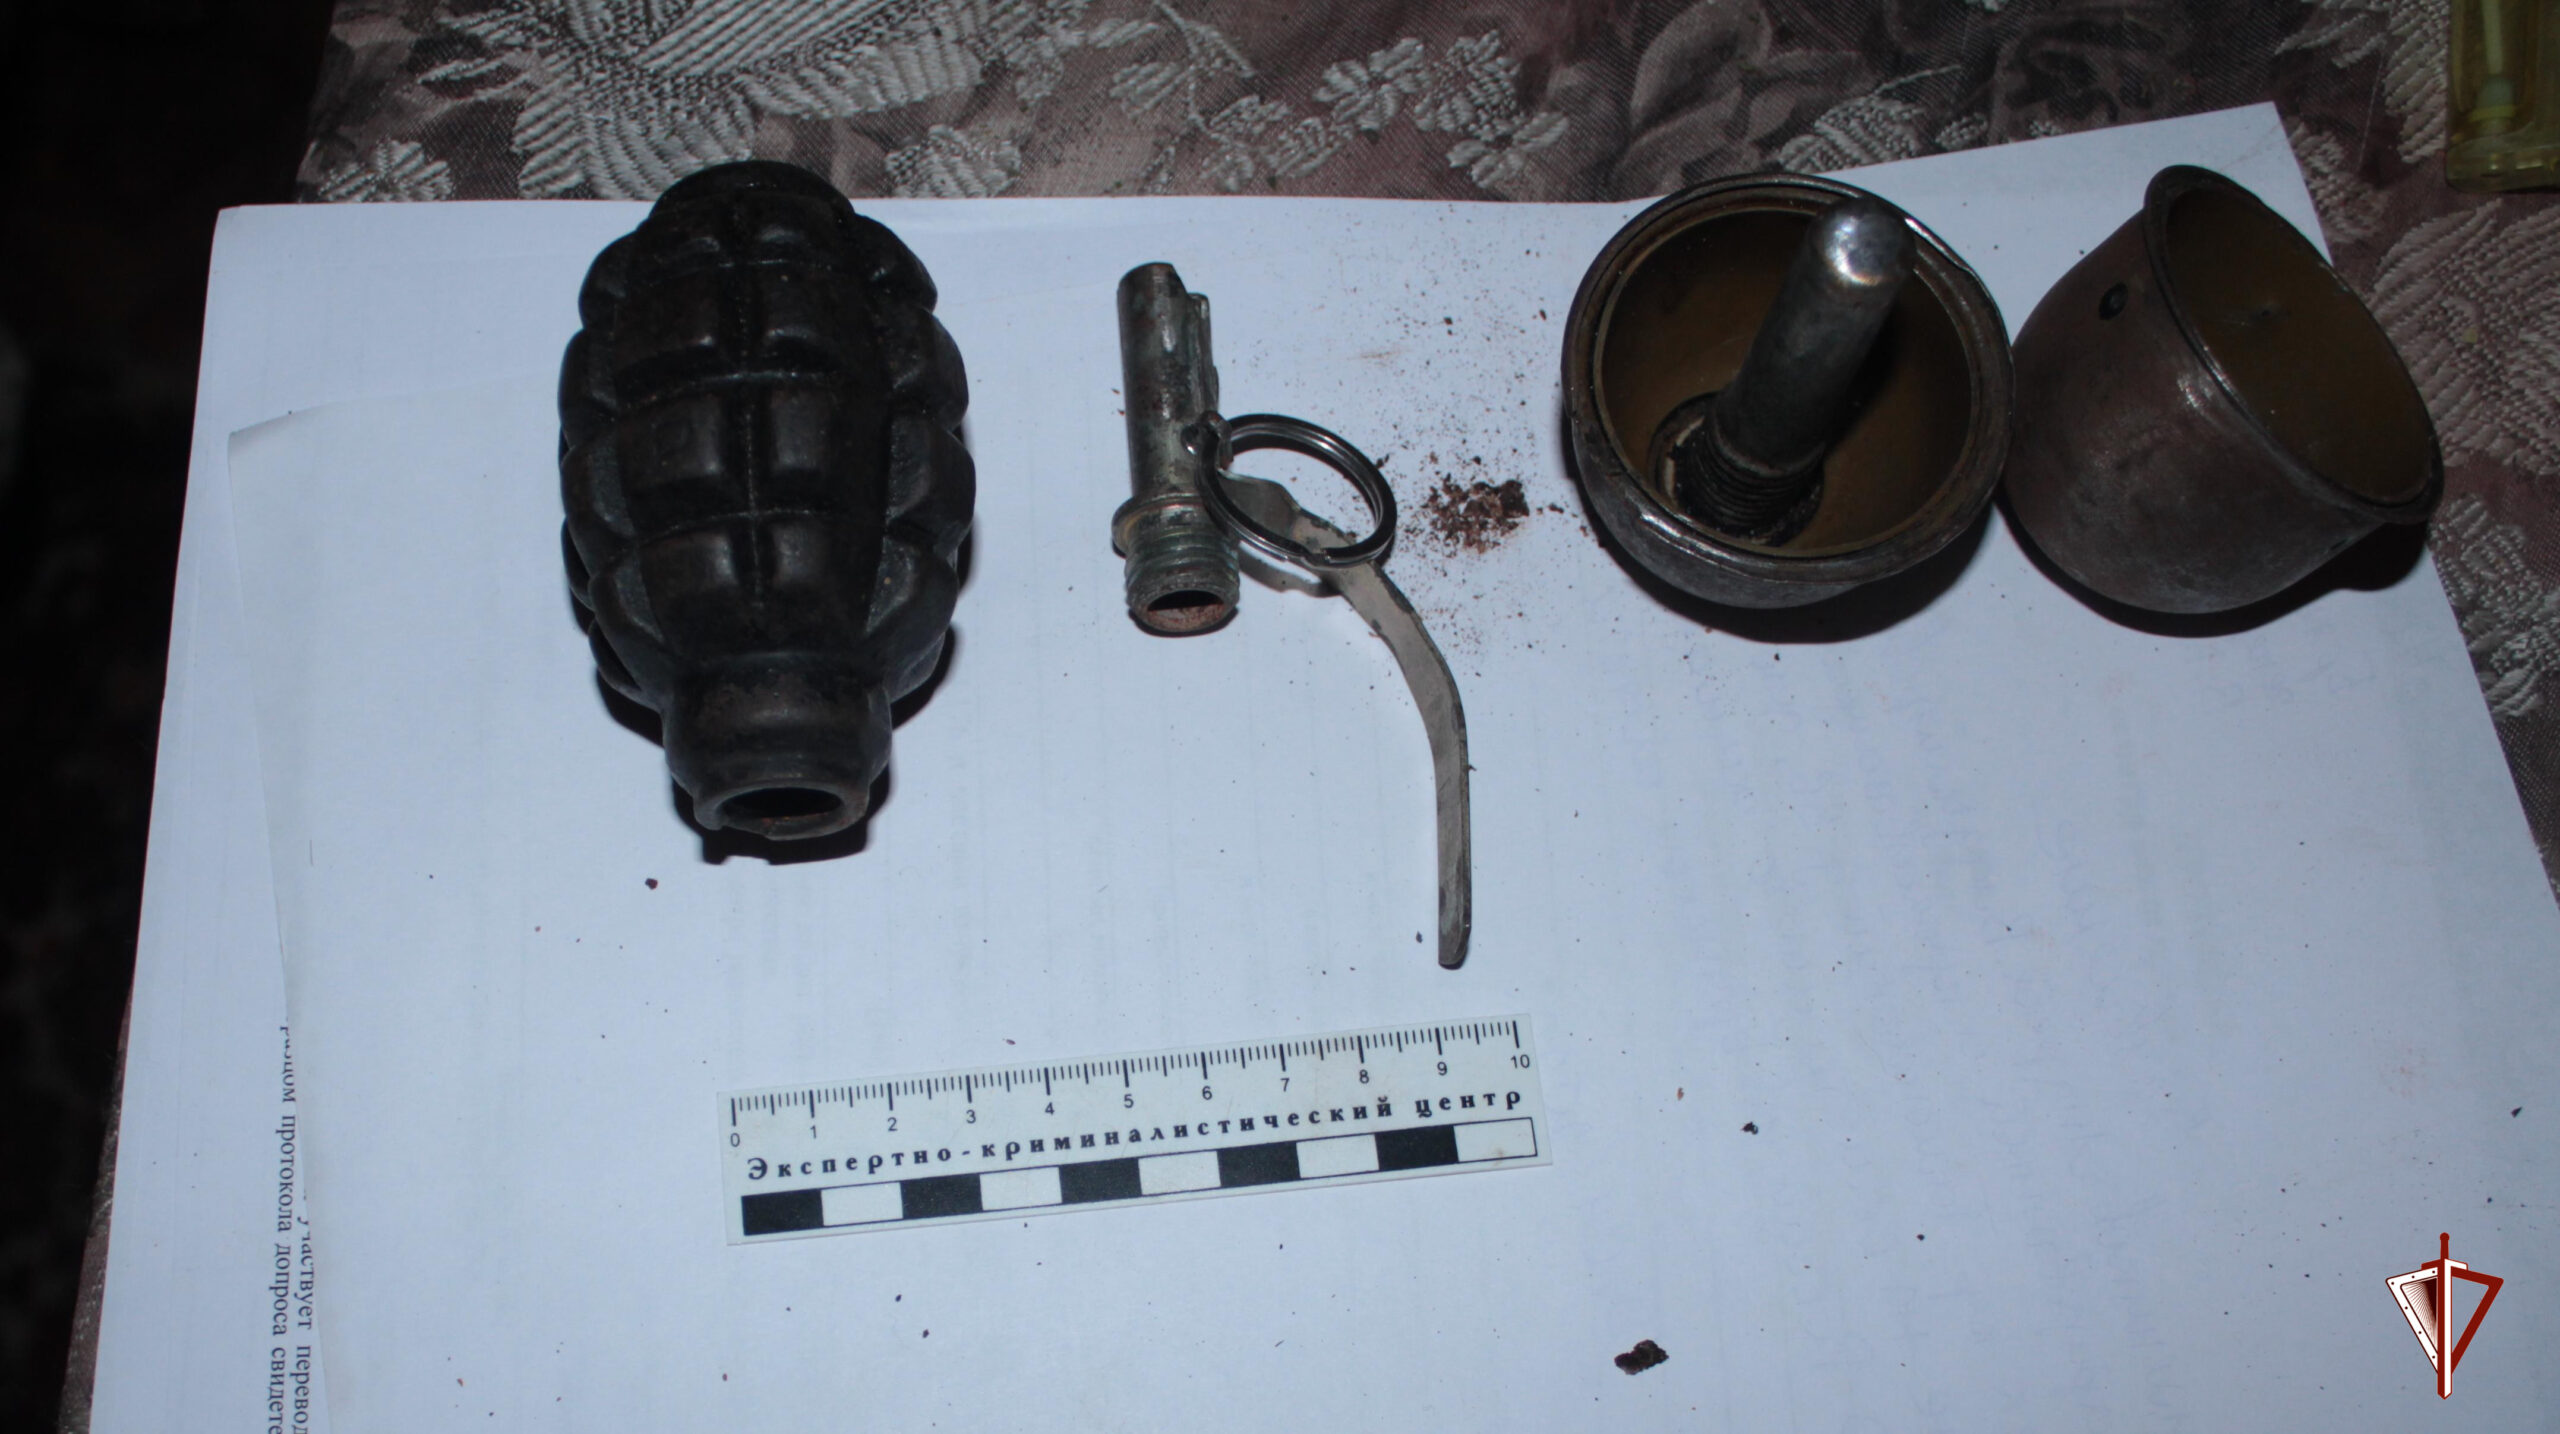 Во дворе дома в Брянске нашли две “гранаты”